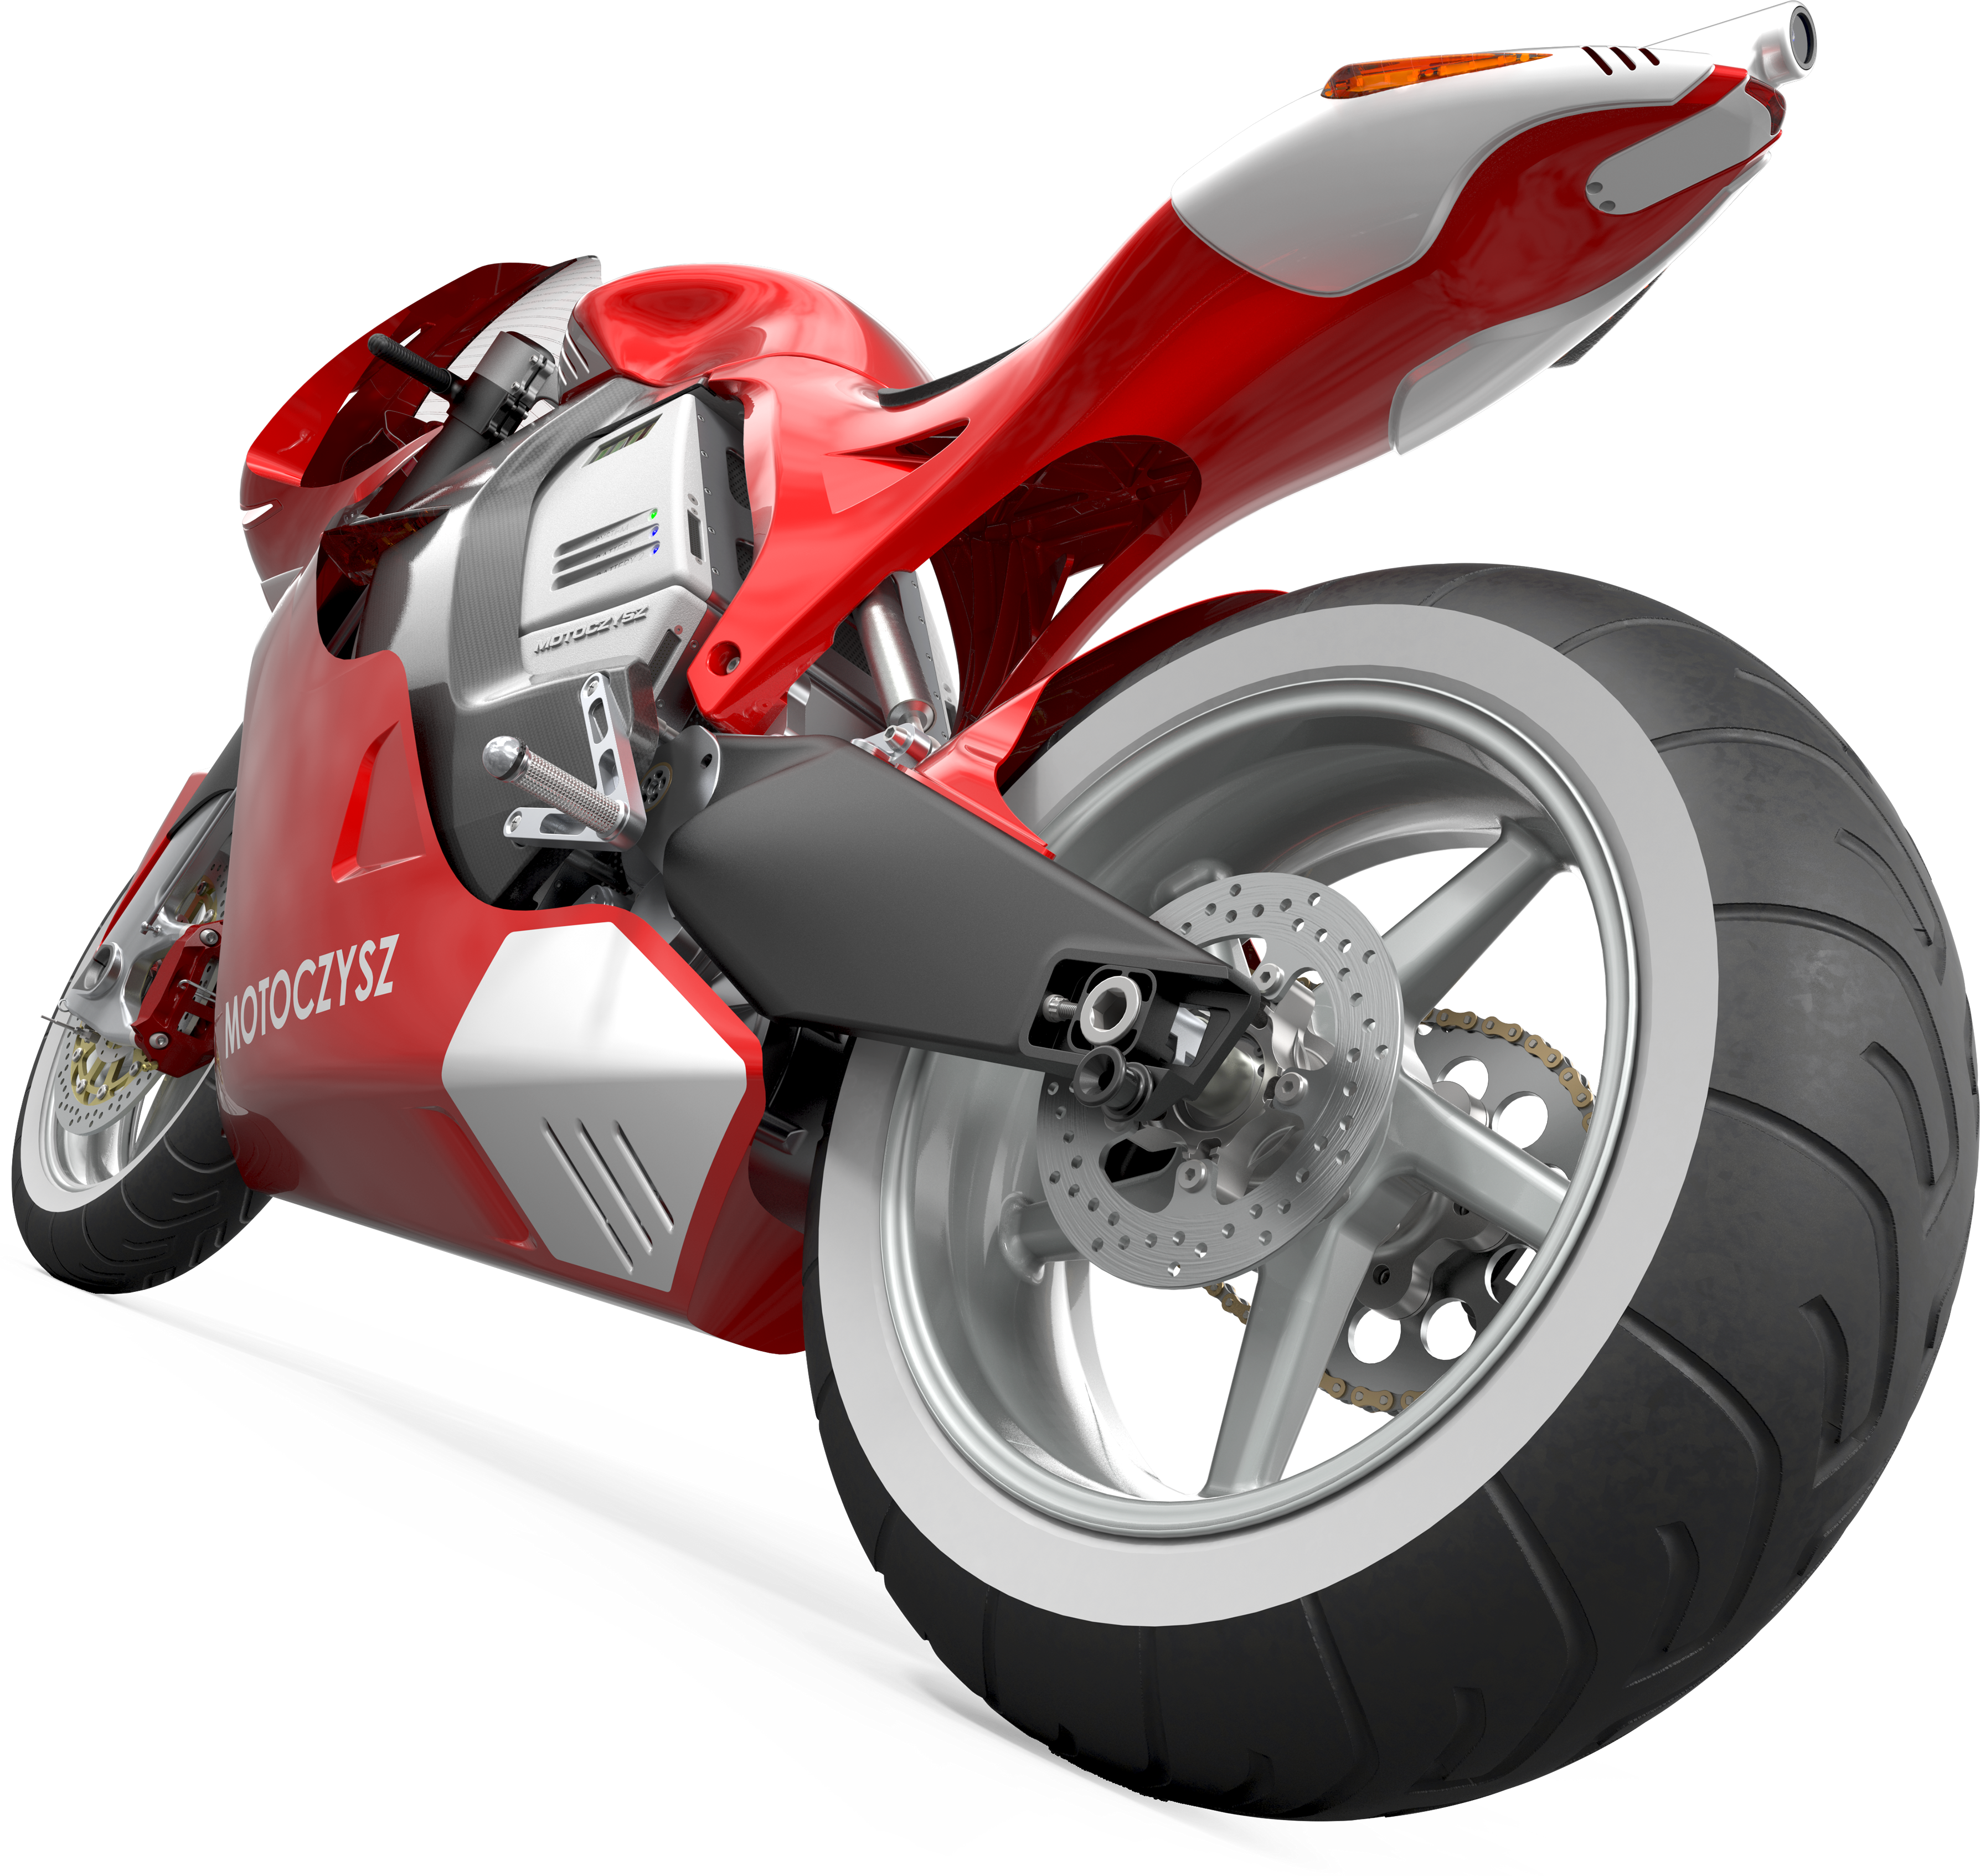 Motocicleta esportiva vermelha